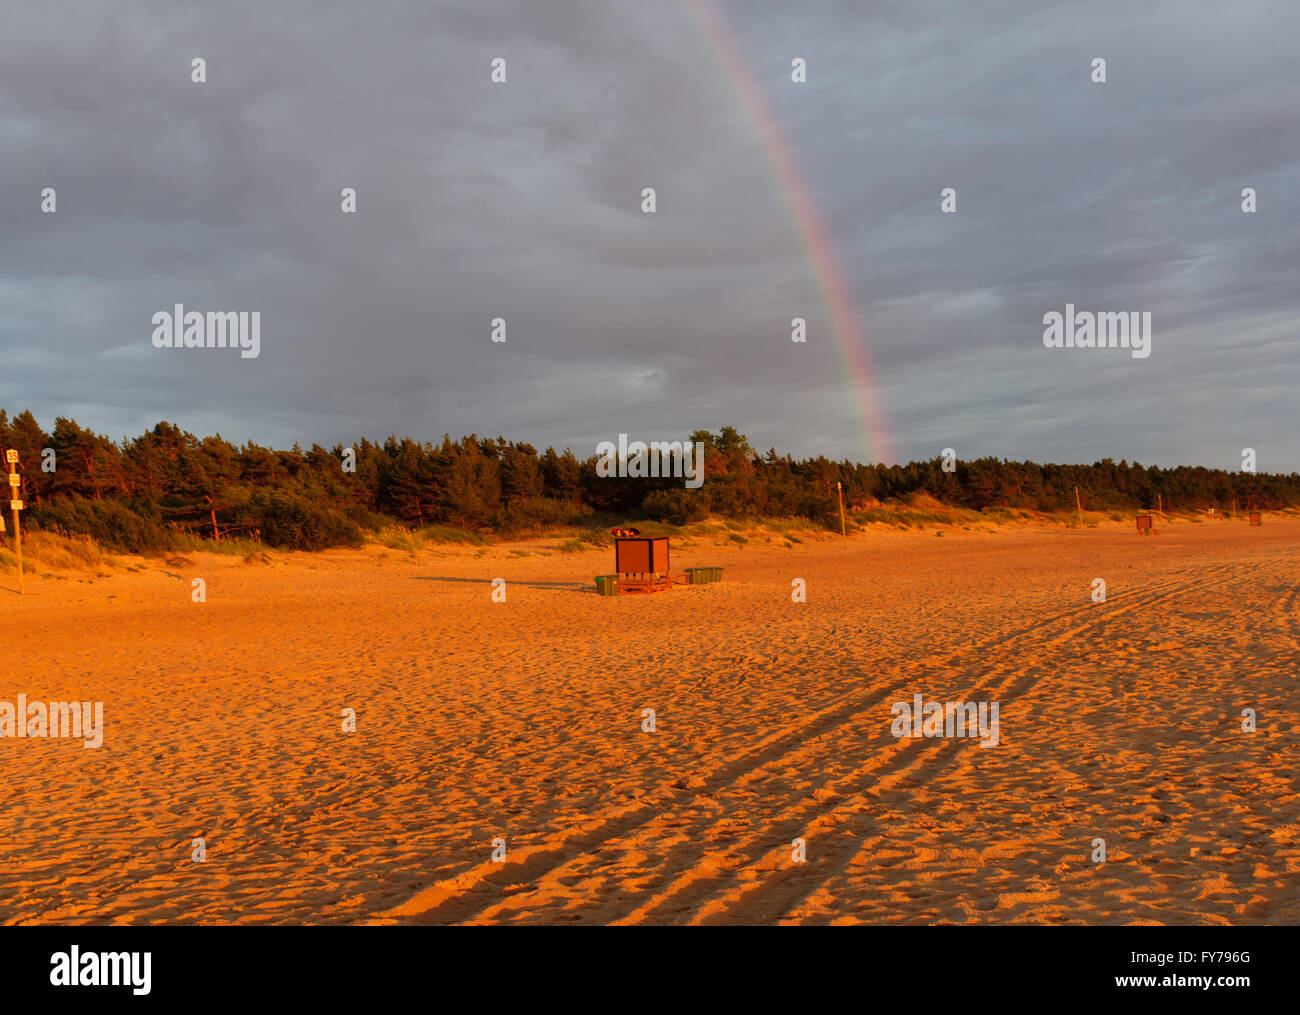 rainbow over a sea beach during a decline Stock Photo